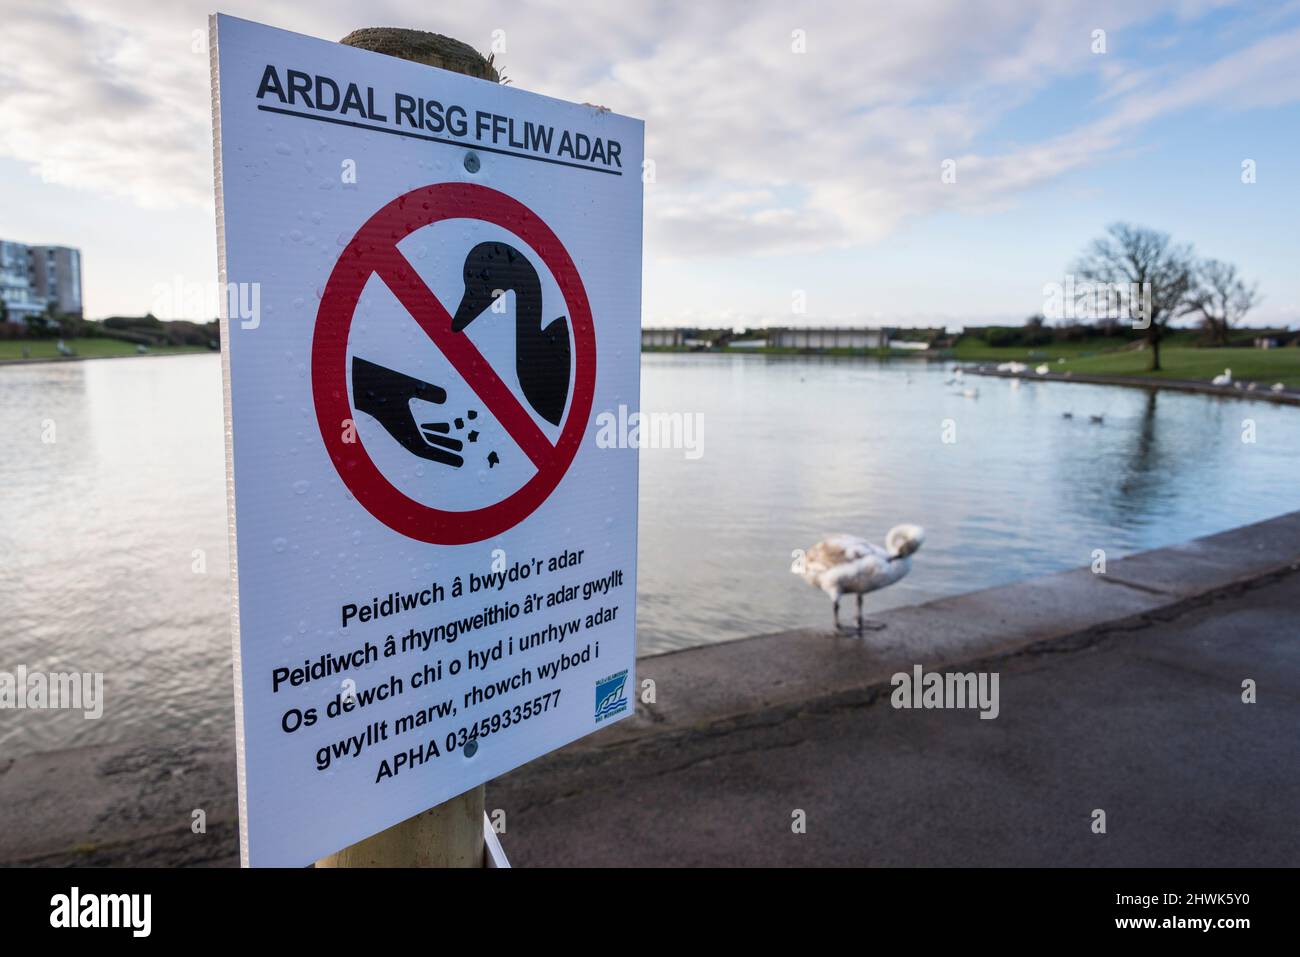 Signo temporal en galés en un parque público advirtiendo que la gripe aviar está presente entre los cisnes vistos en el fondo. Foto de stock